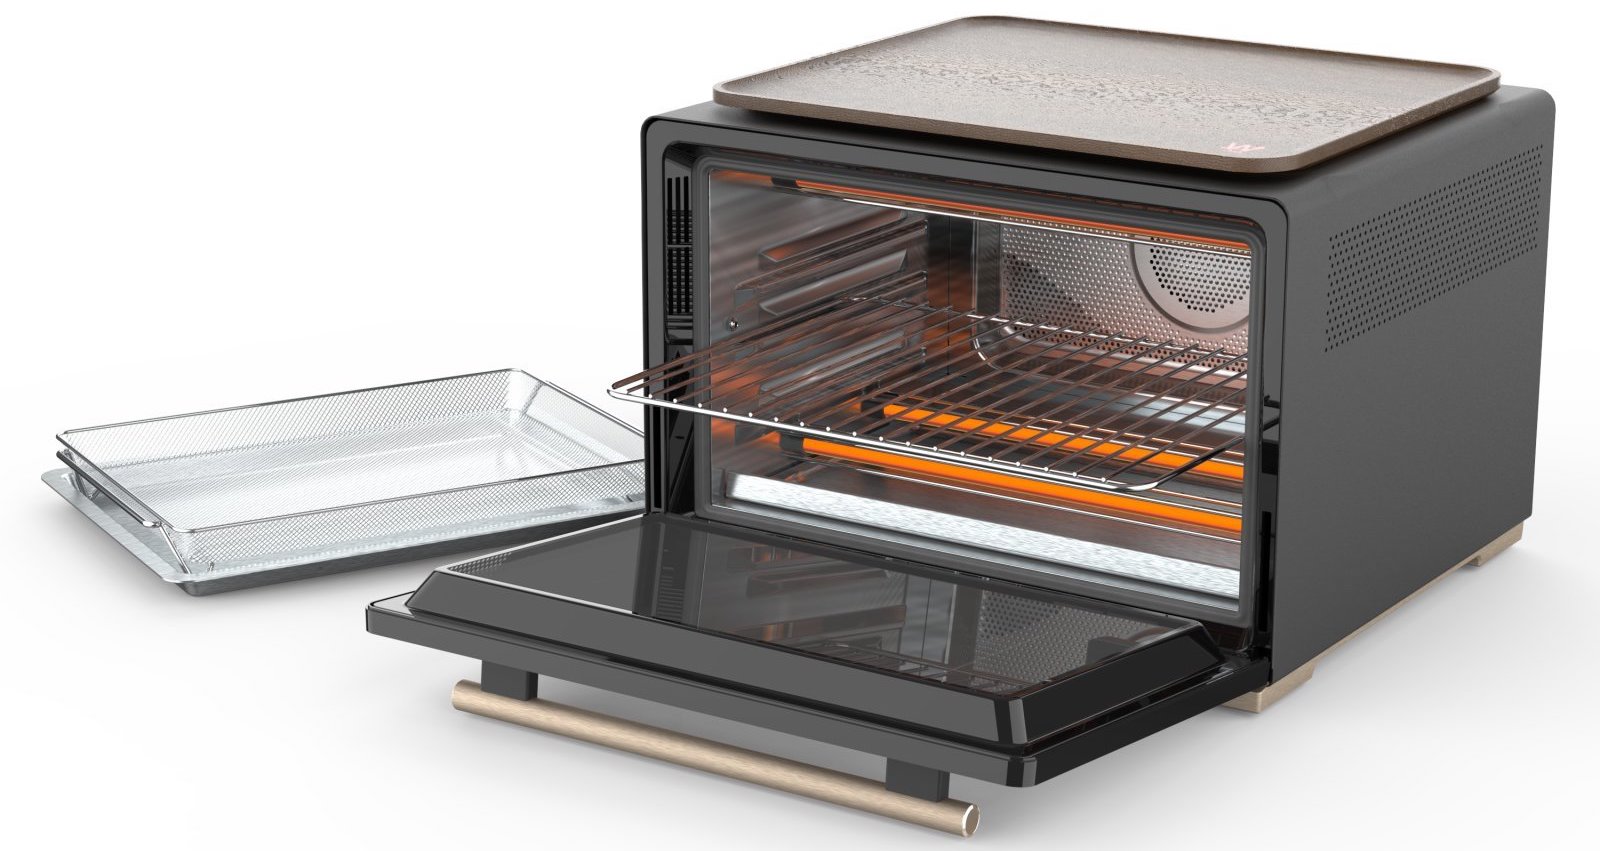 Whirlpool unveils smart countertop oven w/ Alexa + more intelligent